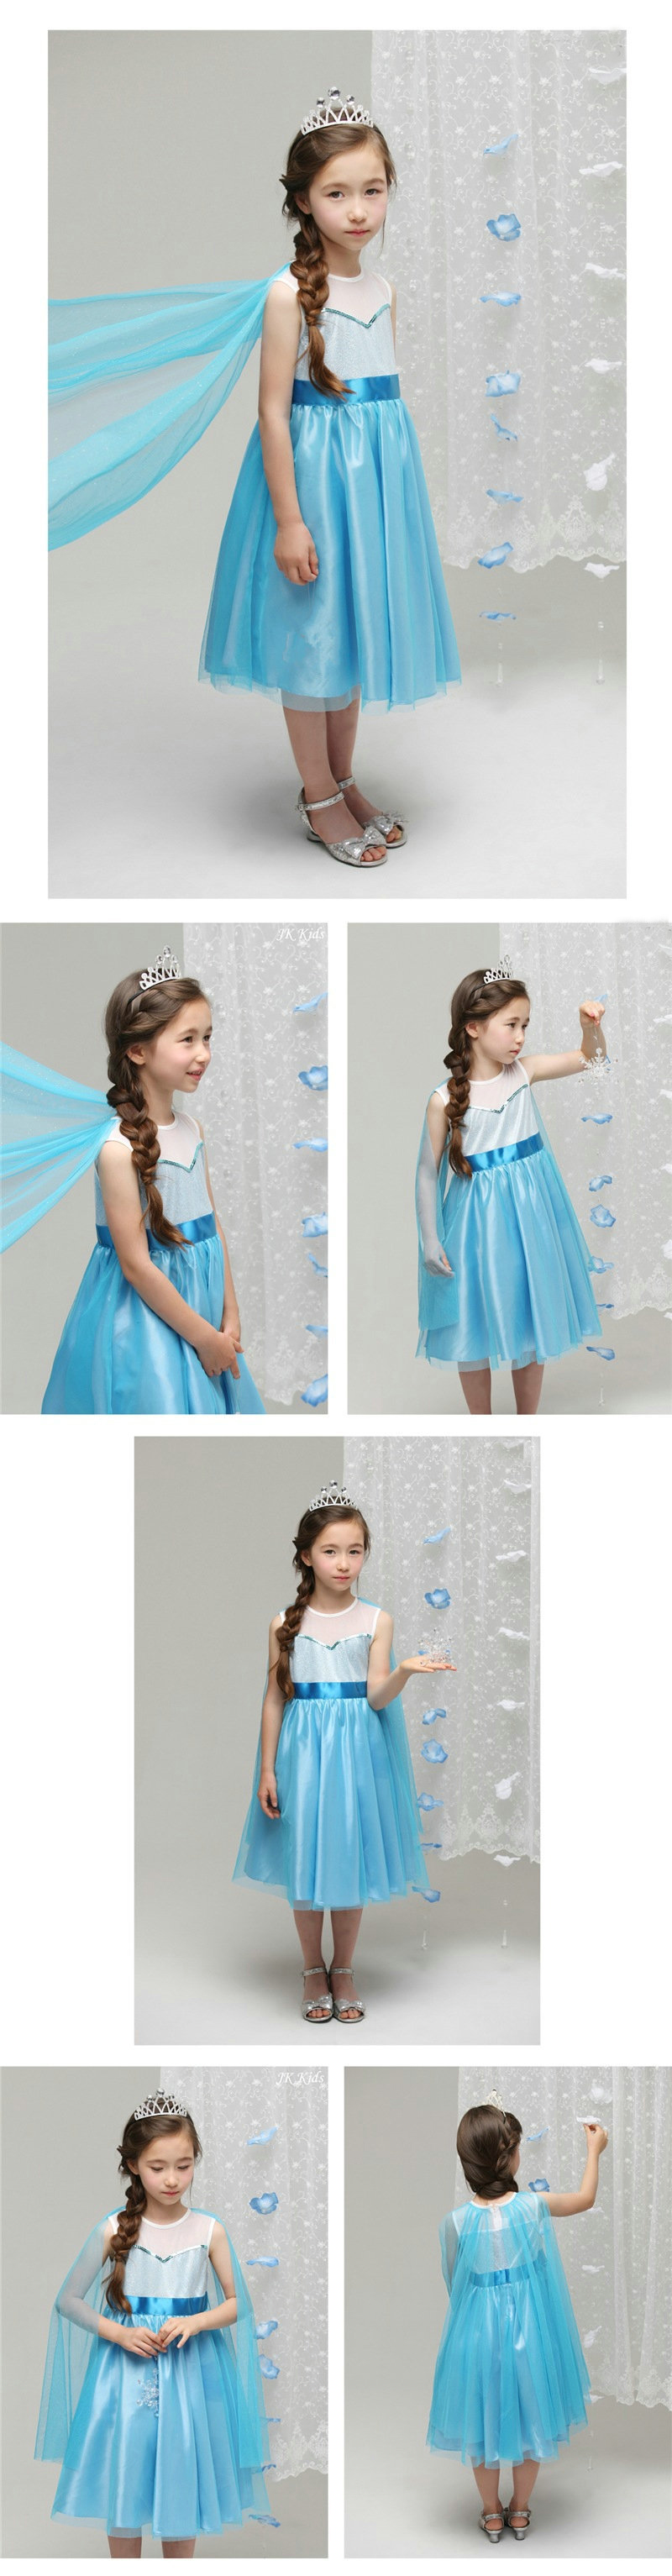 F68019 Frozen pretty mesh princess dress